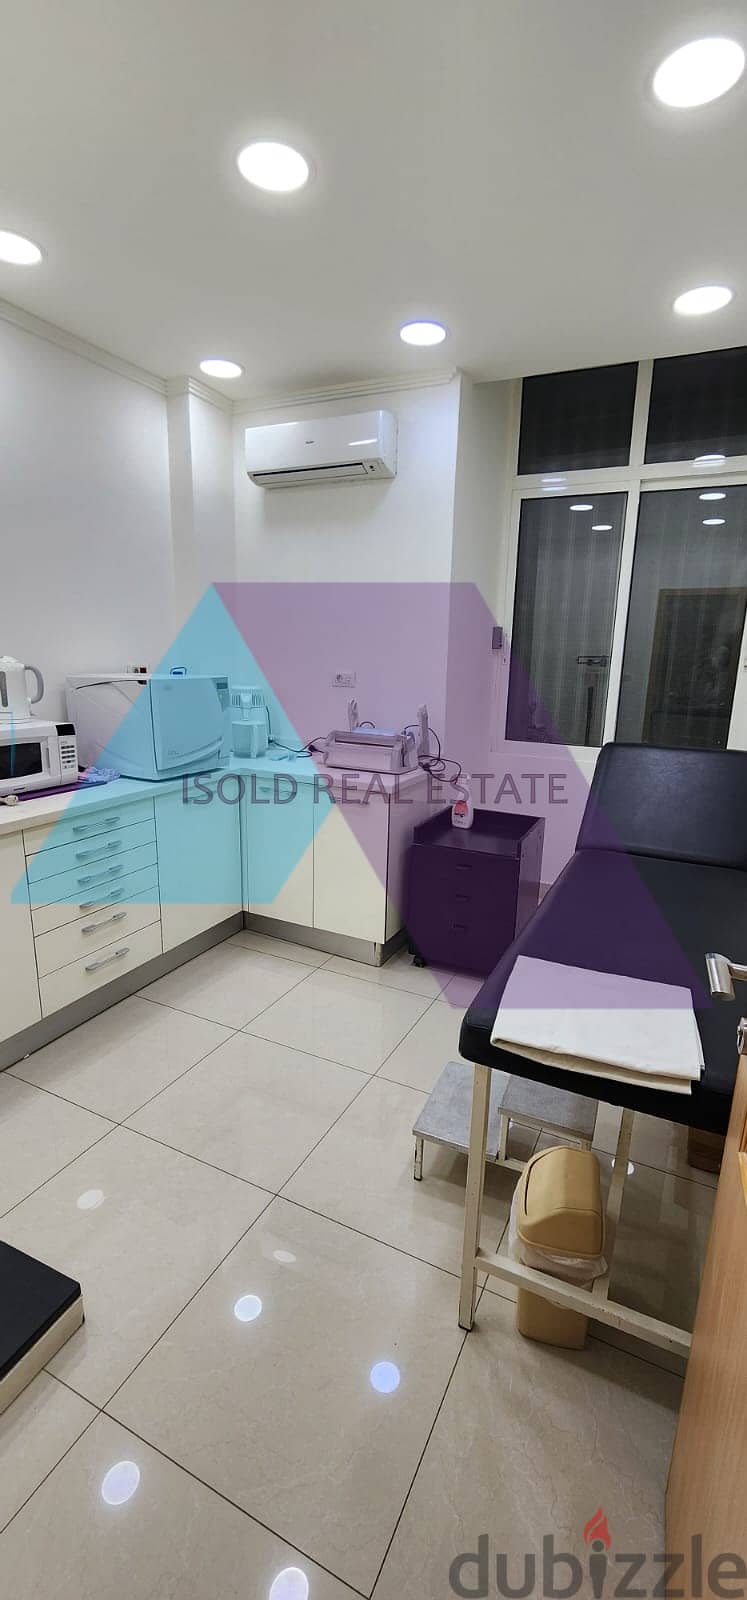 A 130 m2 apartment for sale in Mar Elias - شقة للبيع في مار الياس 5